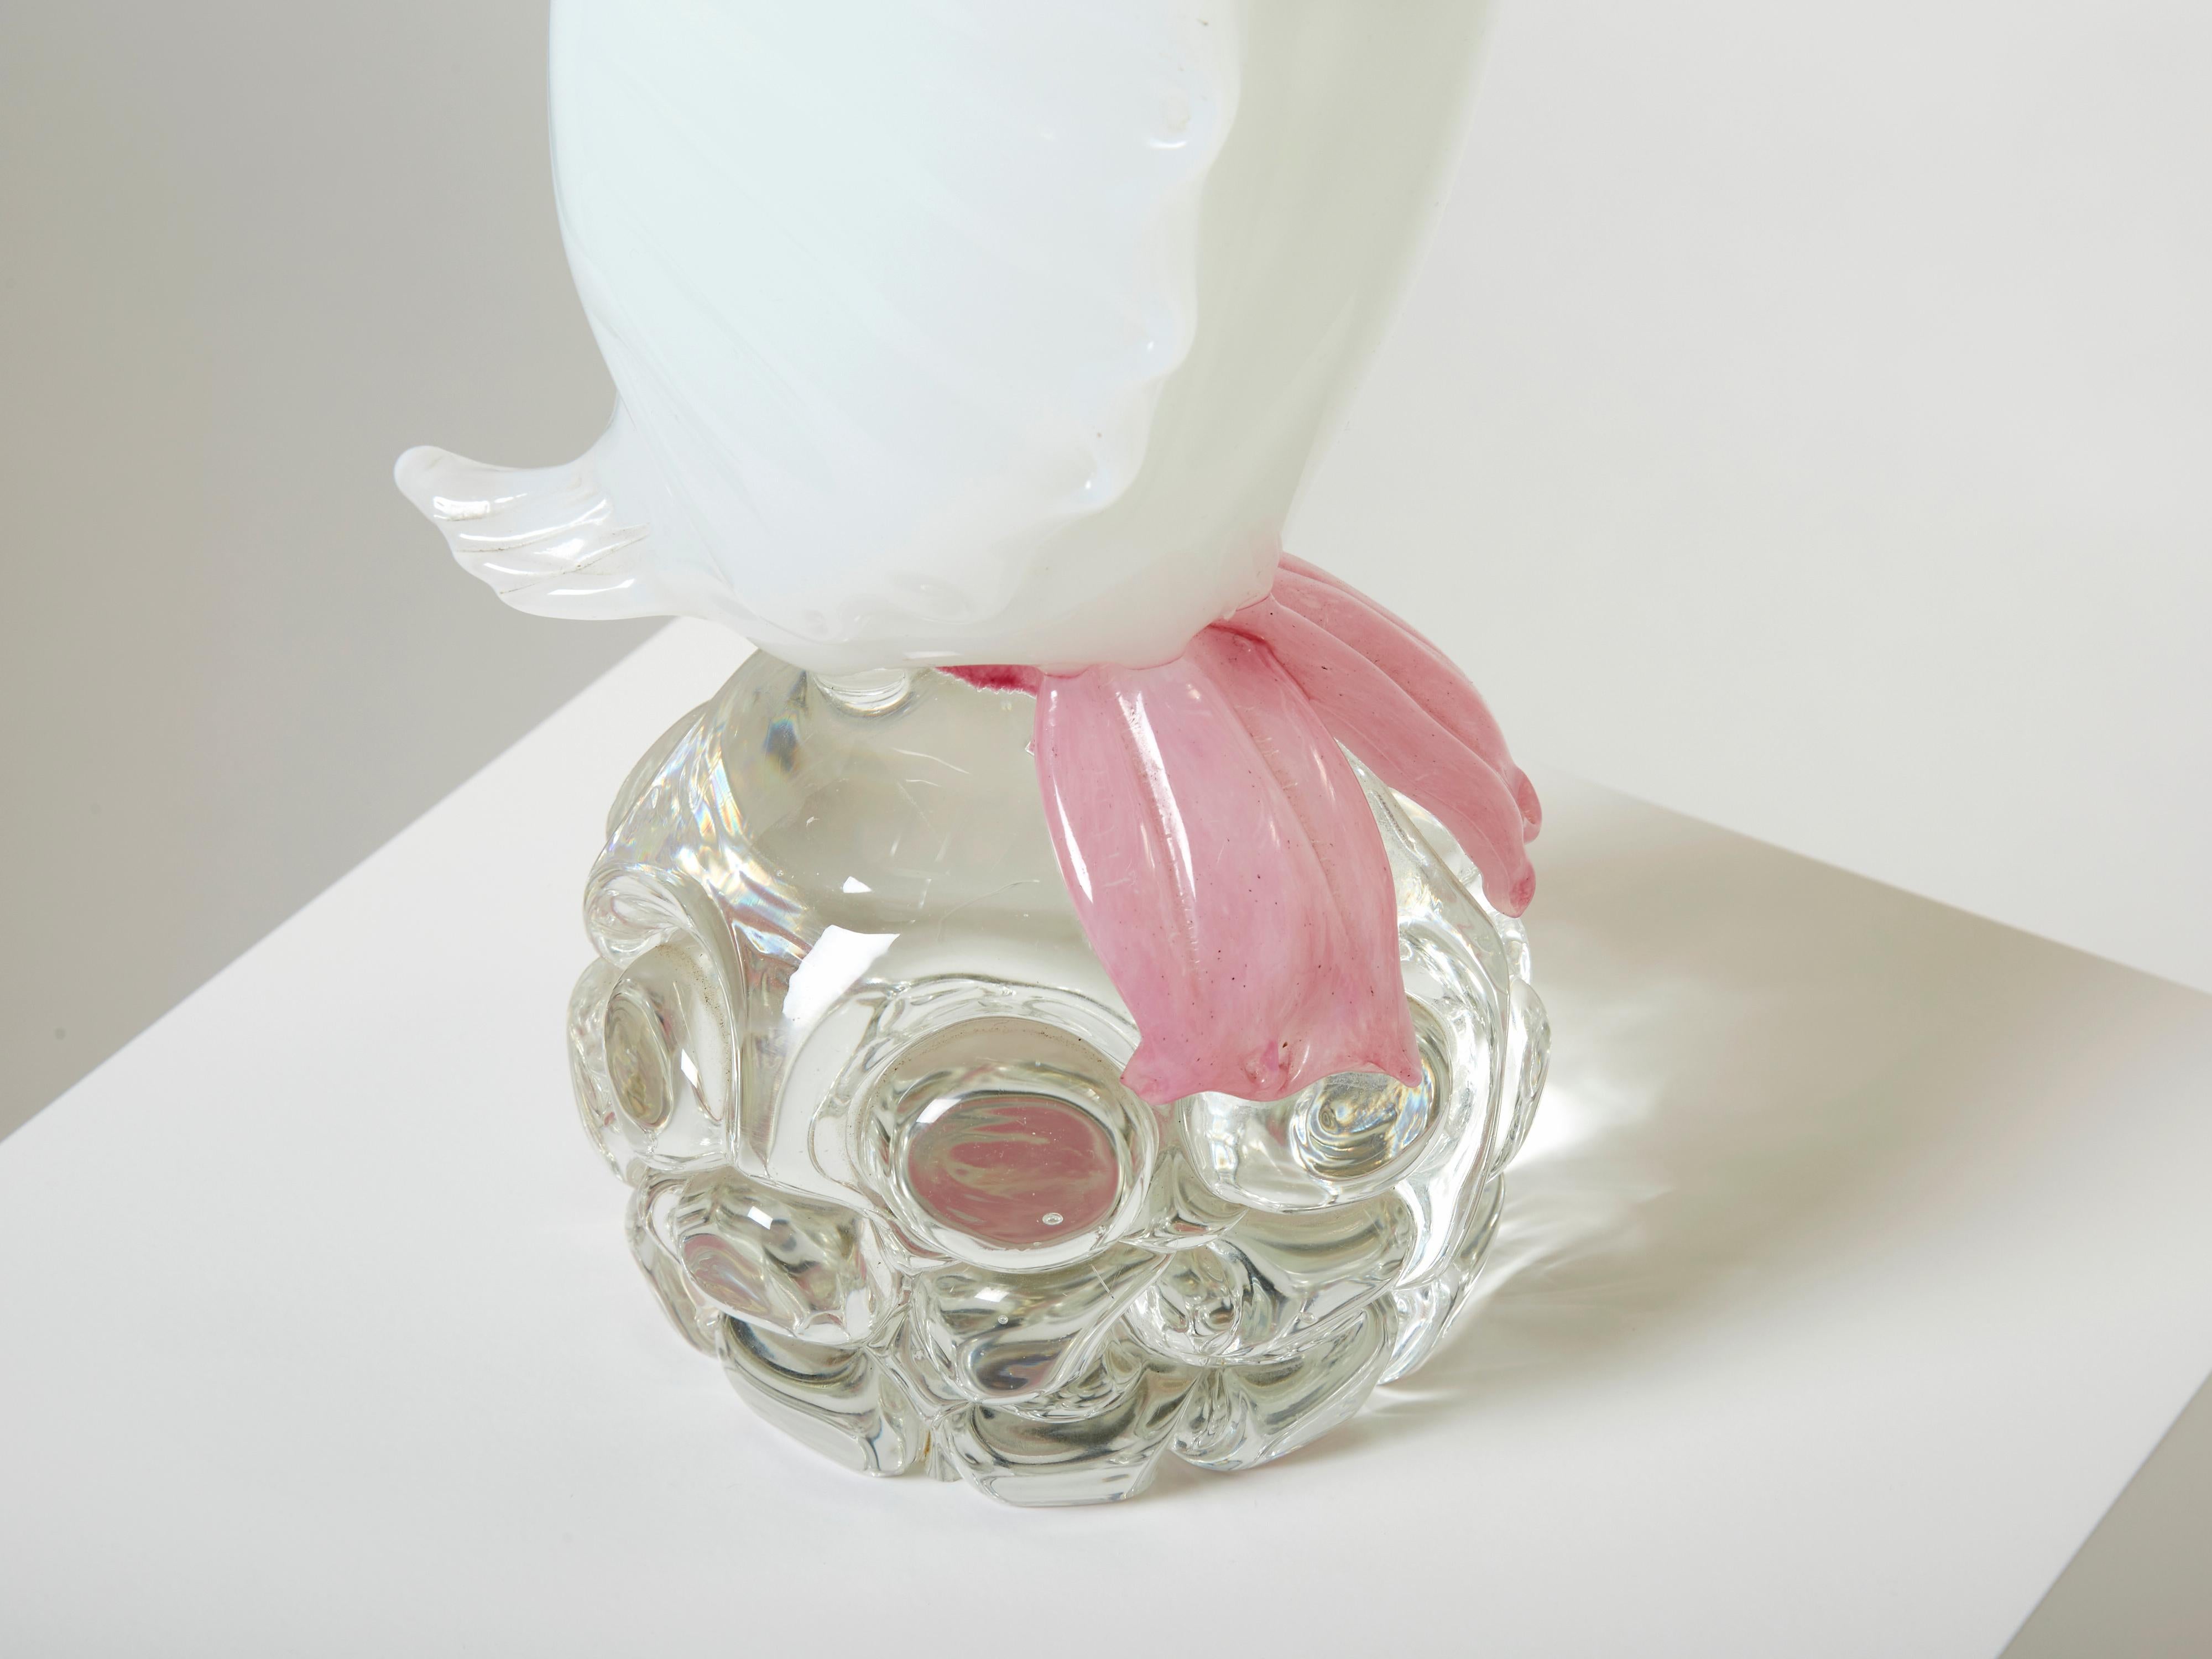 Crystal Pino Signoretto Pelican Murano Glass Sculpture 1970